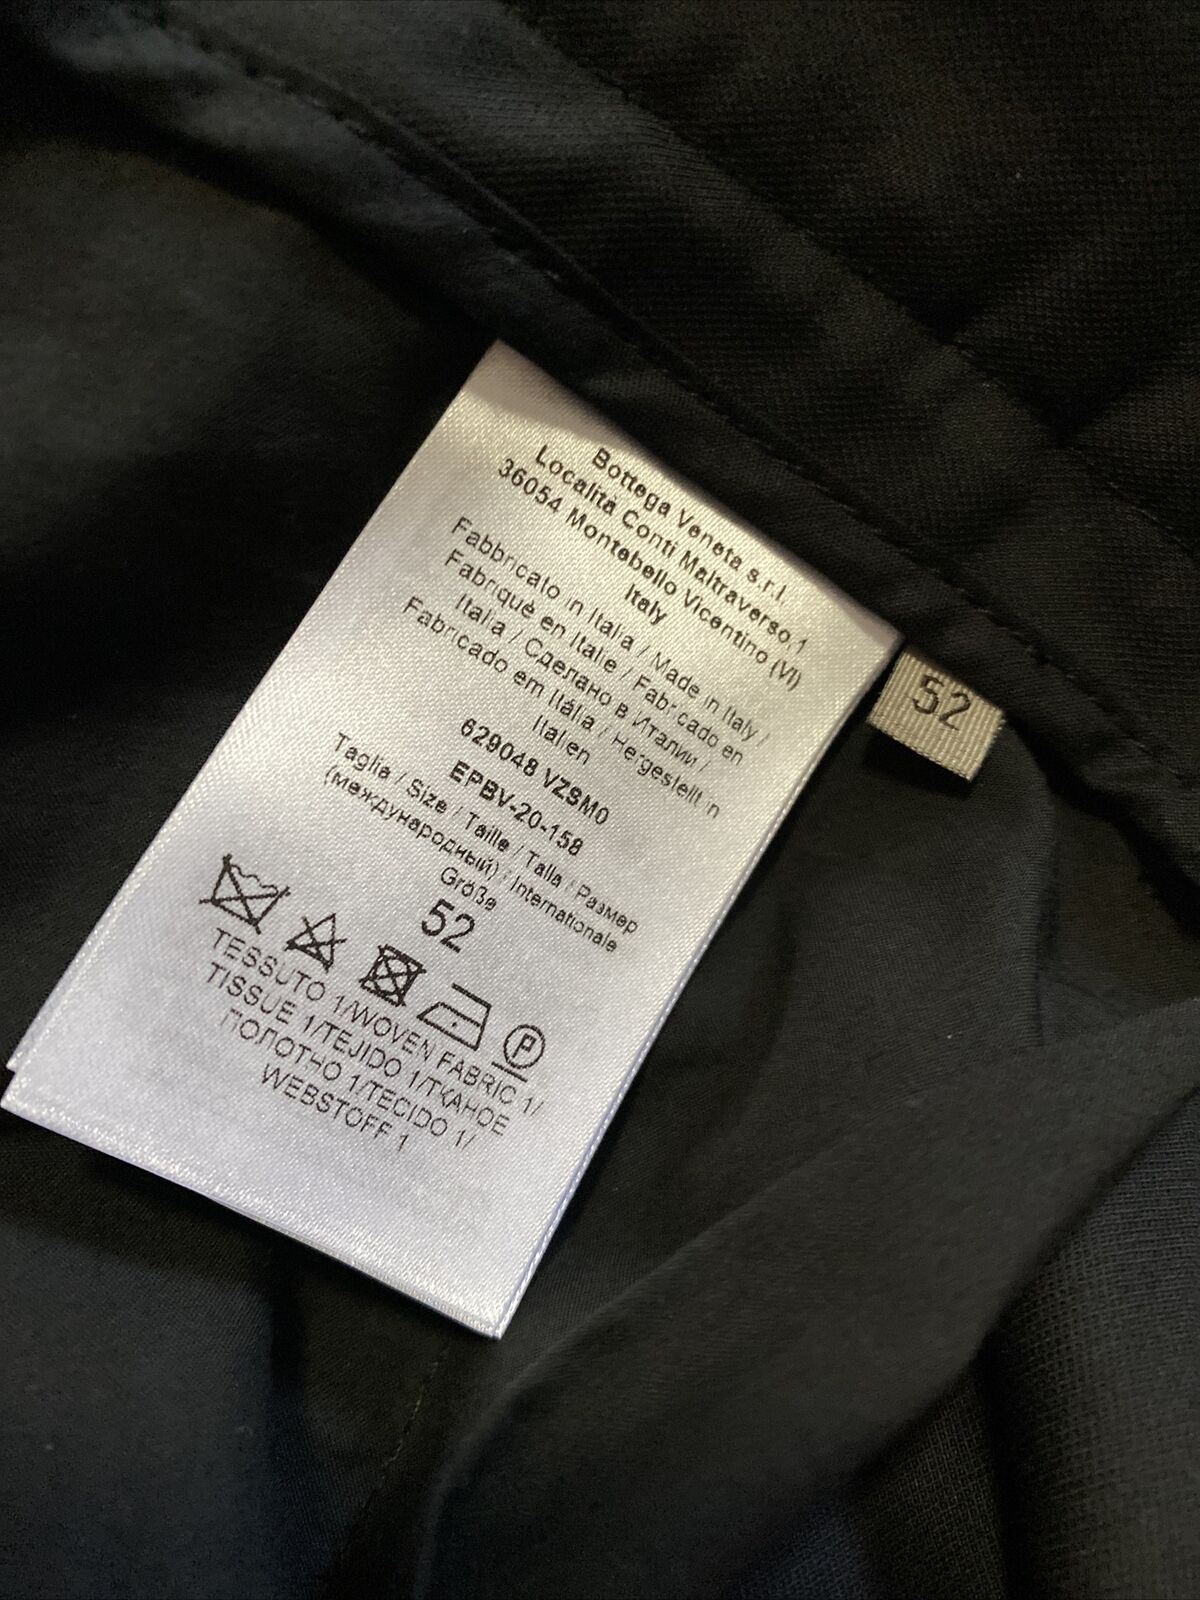 СЗТ $690 Мужские брюки Bottega Veneta черные 36 США (52 ЕС) Италия